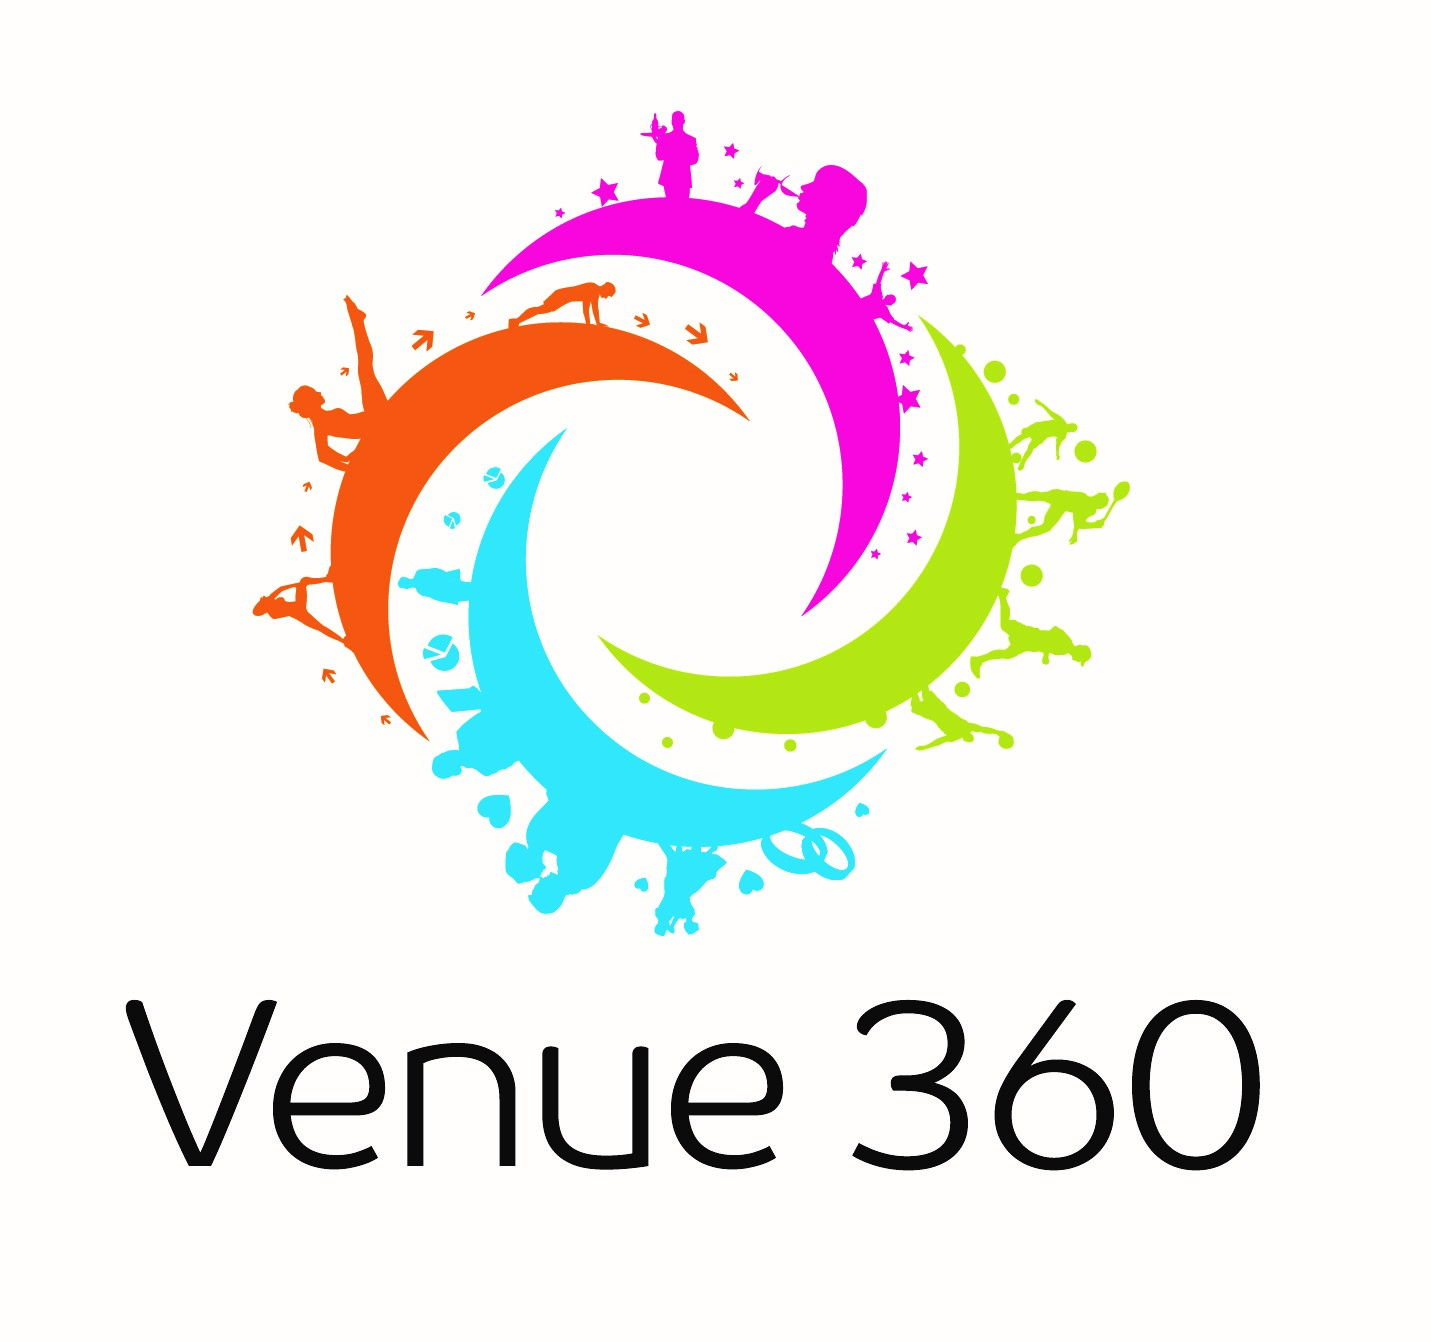 Venue 360 logo